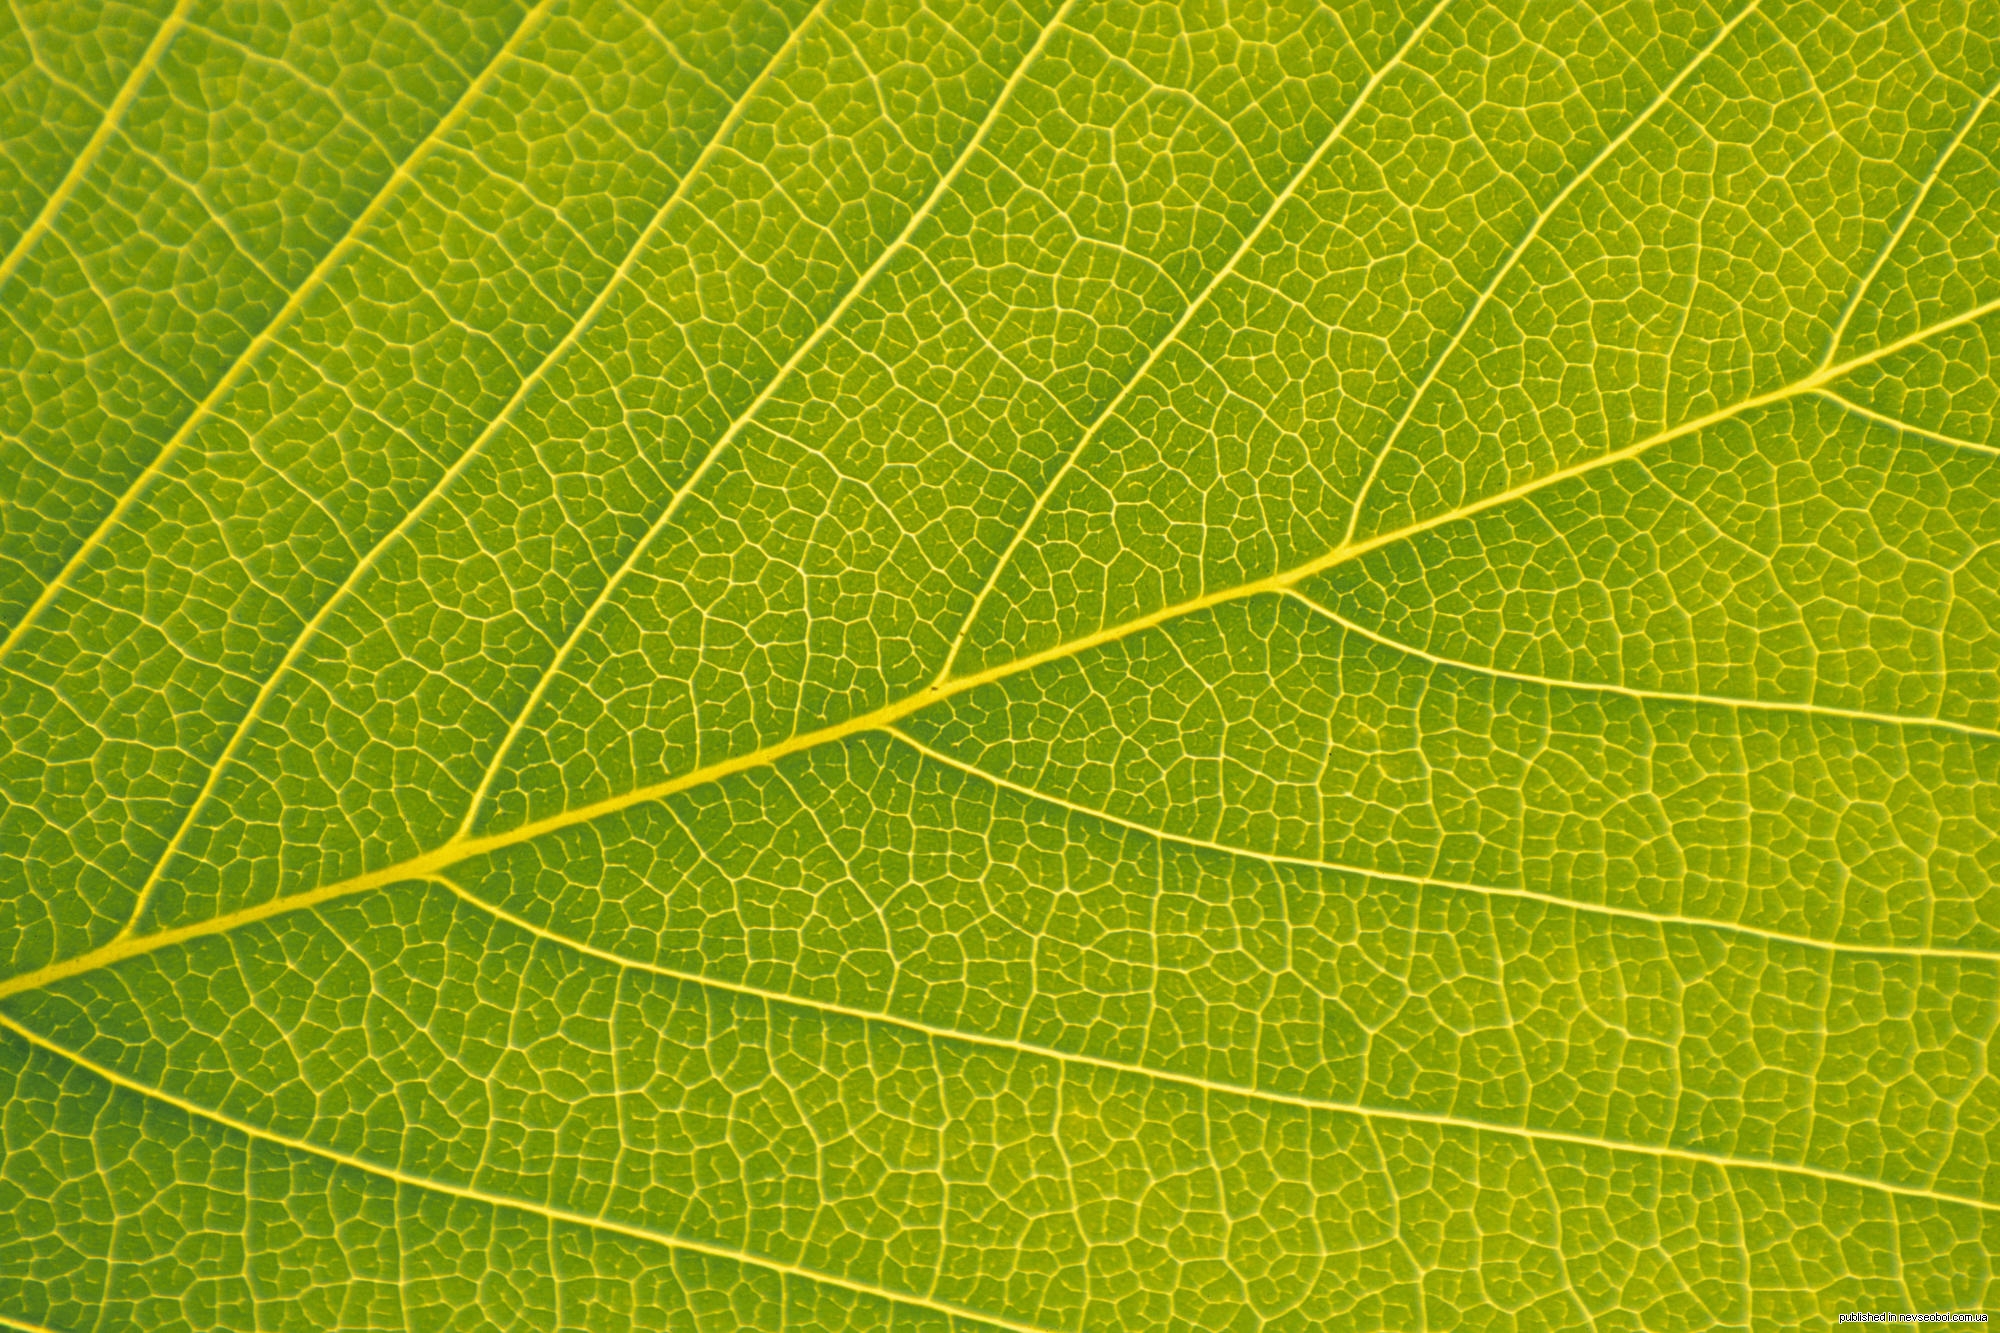 Сток лист. Прожилки листа. Зеленый лист текстура. Лист с прожилками макро. Текстура листвы.